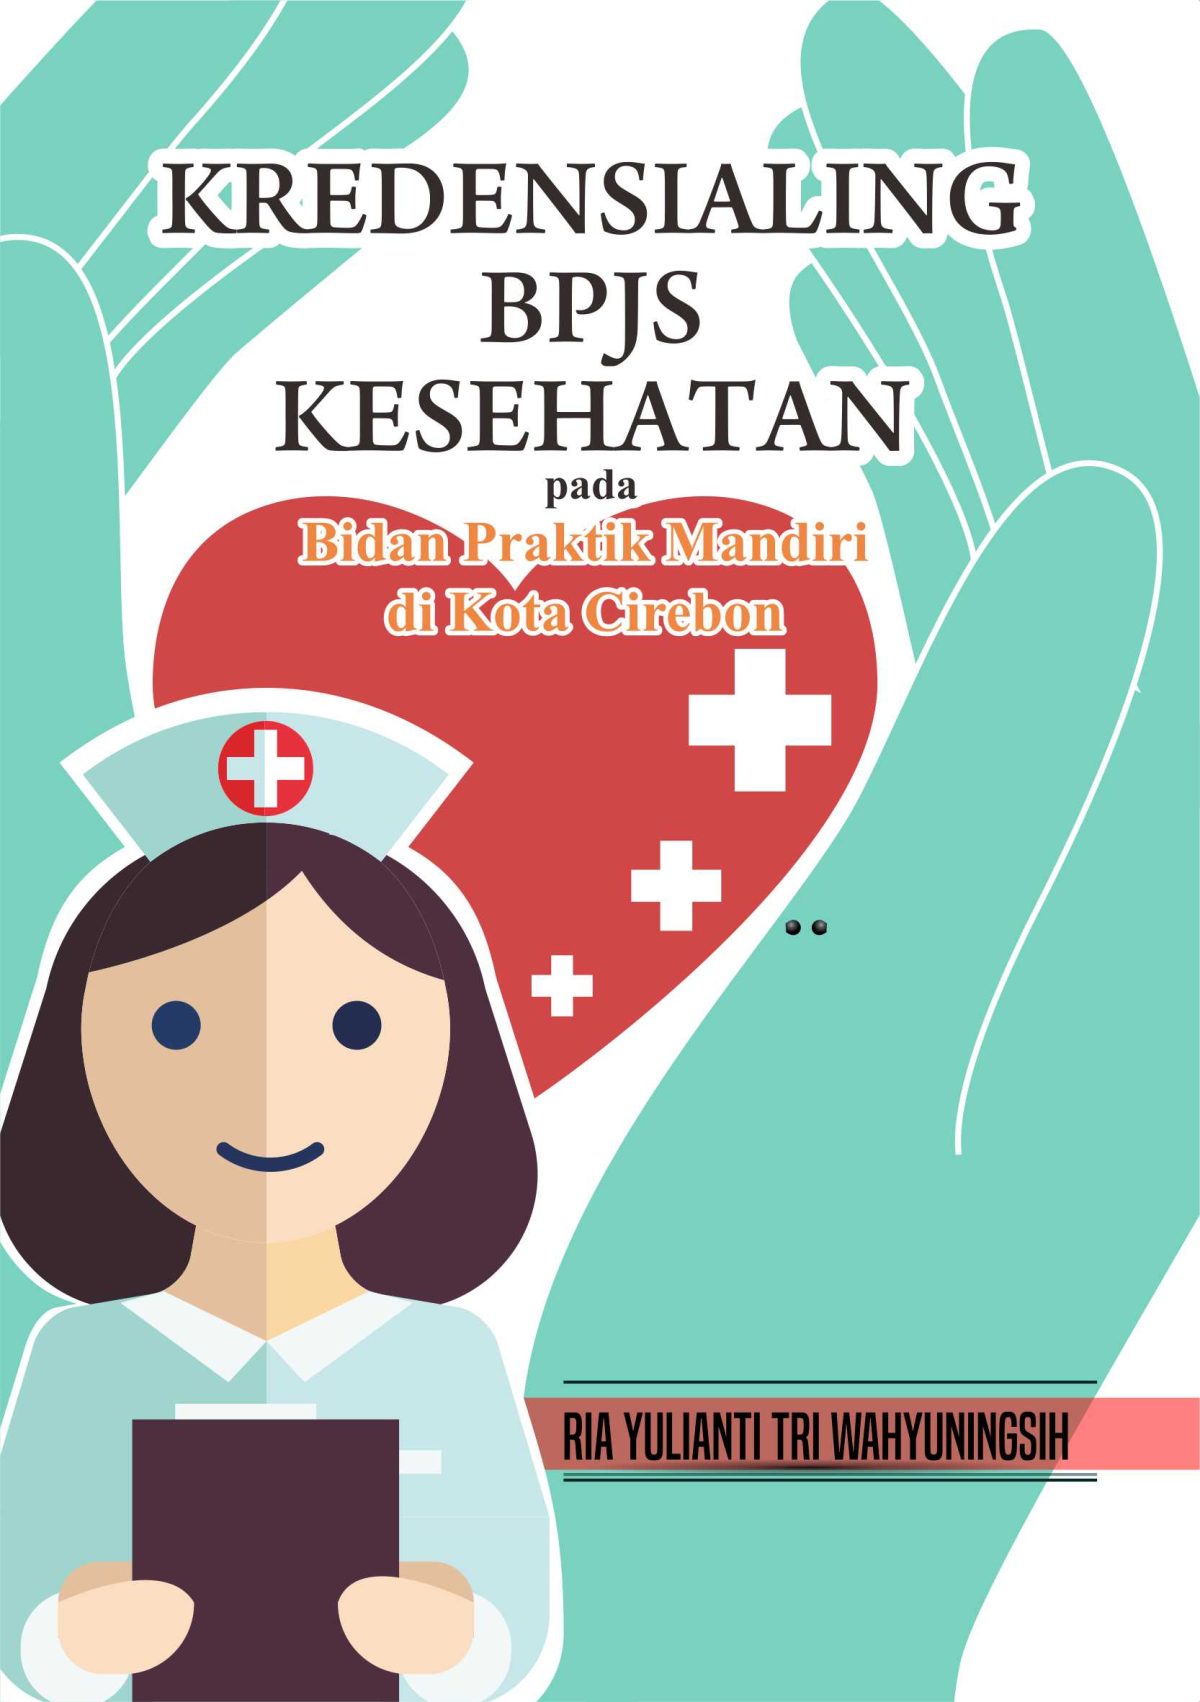 Kredensialing BPJS Kesehatan pada Bidan Praktik Mandiri